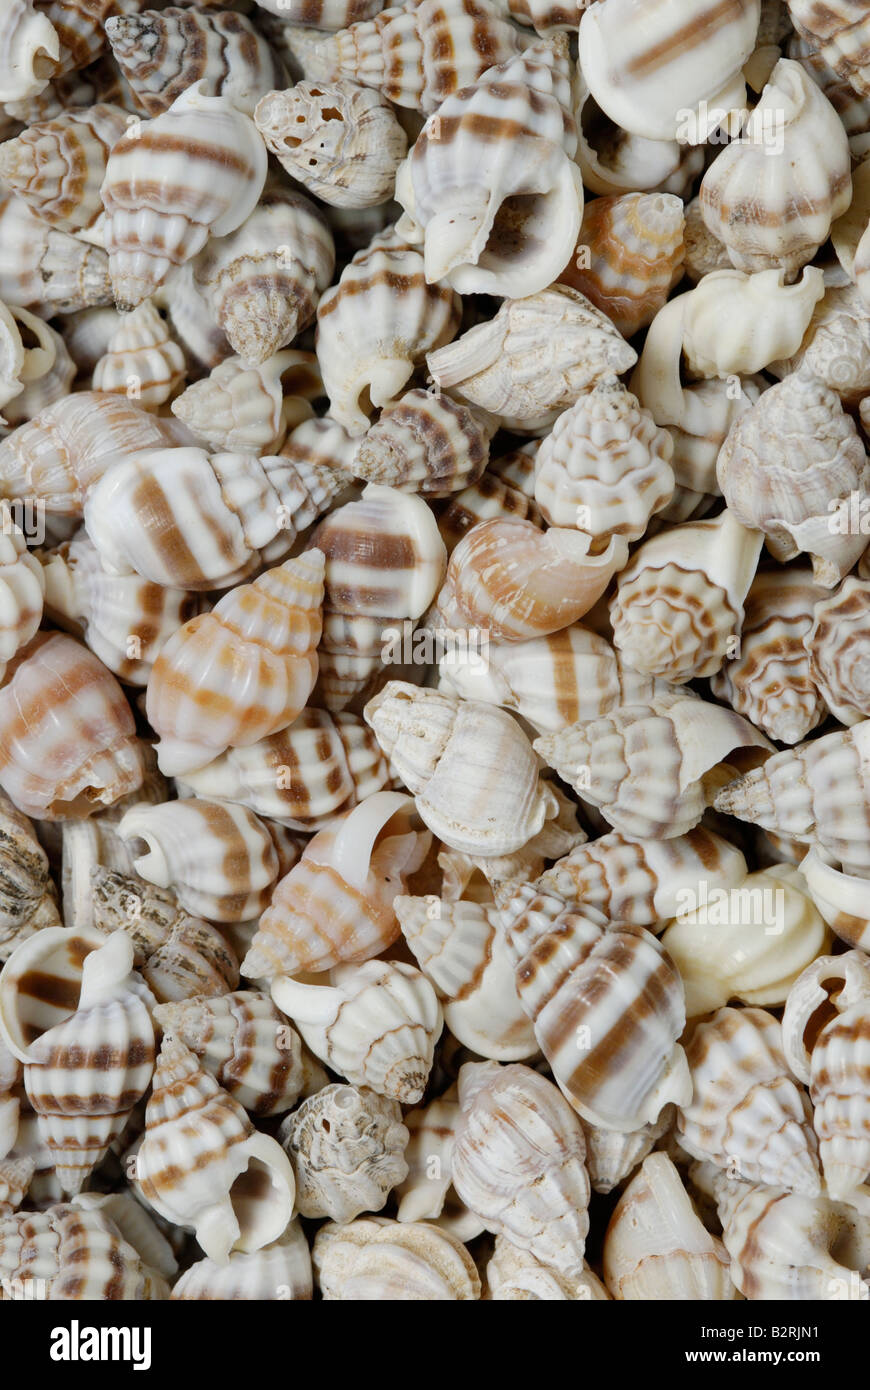 Una raccolta di piccoli gusci di gasteropodi gasteropodi sono singole molluschi sgusciati Foto Stock